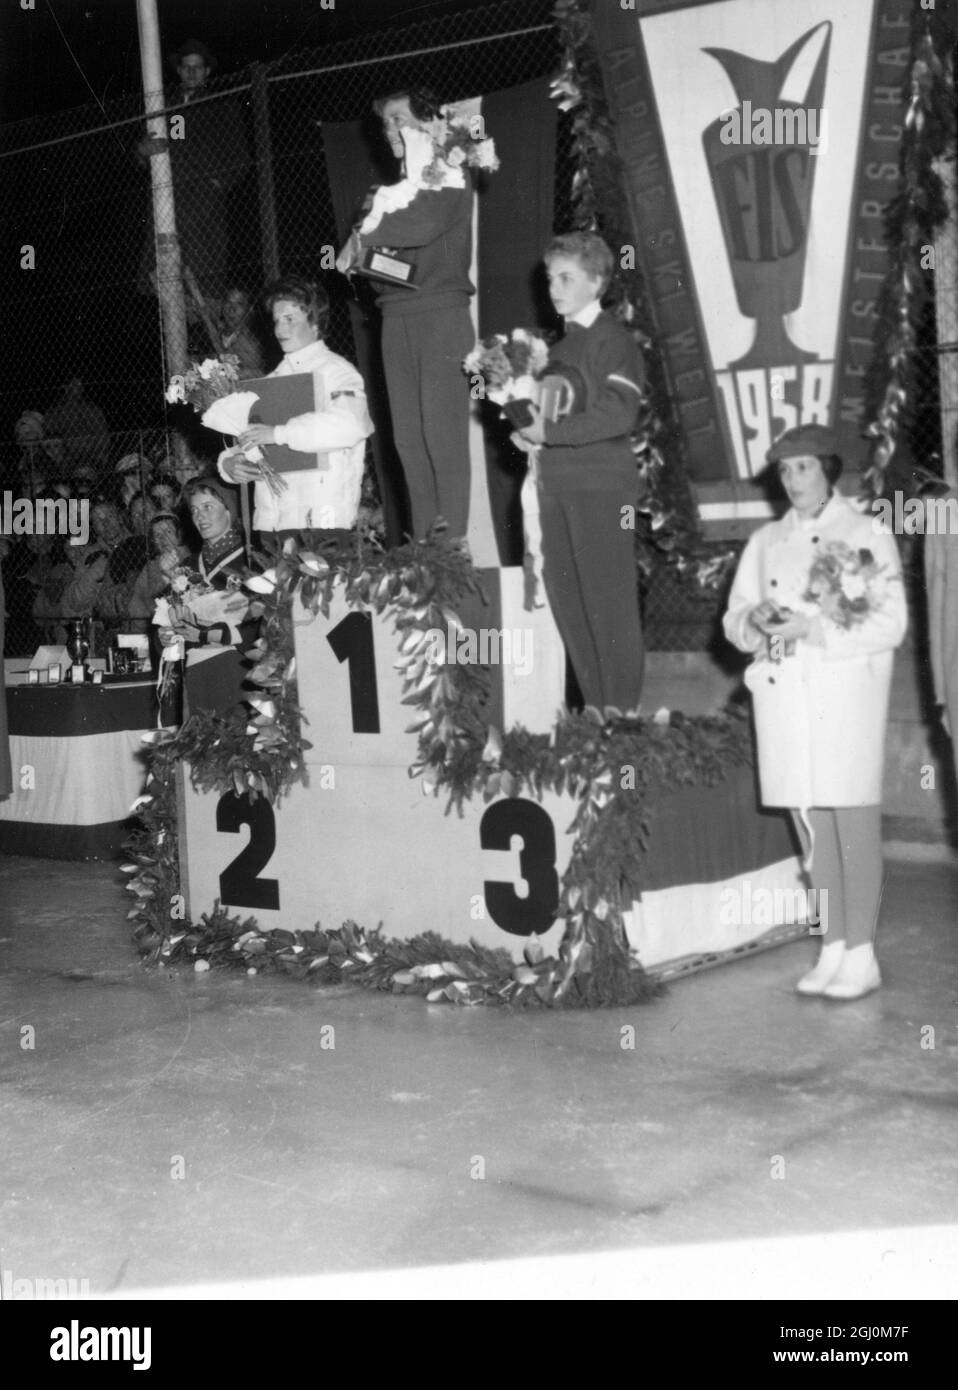 Am Stand nach der Siegerehrung für die Damen-Alpine-Kombination in Bad Gastein Österreich sind Sieger und Läufer Von links nach rechts Berit Stuve aus Norwegen 4. Lucille Wheeler aus Kanada 2. Die Gewinnerin Frieda Daenzer aus der Schweiz Putzi Frandl aus Österreich 3. Und Daniele Telinge aus Frankreich 5. Februar 11 1958 Stockfoto